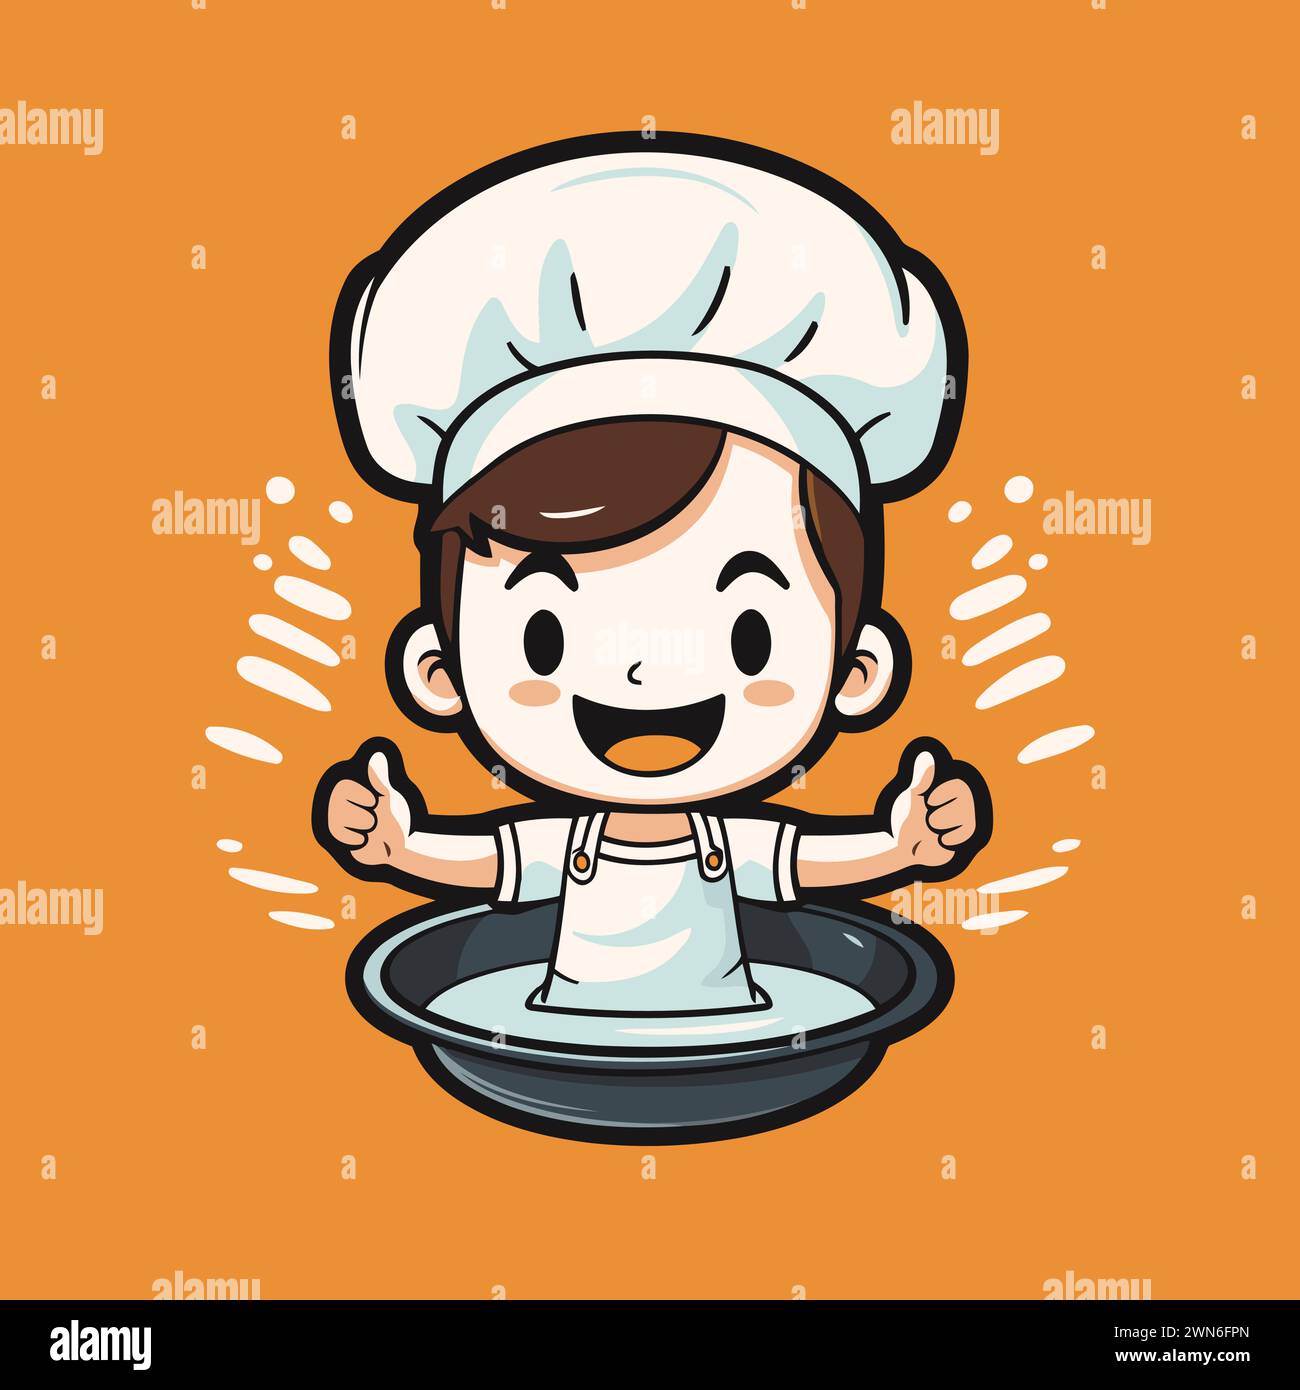 Carino illustrazione vettoriale dei cartoni animati dello chef boy. Cucina e ristorante. Illustrazione Vettoriale